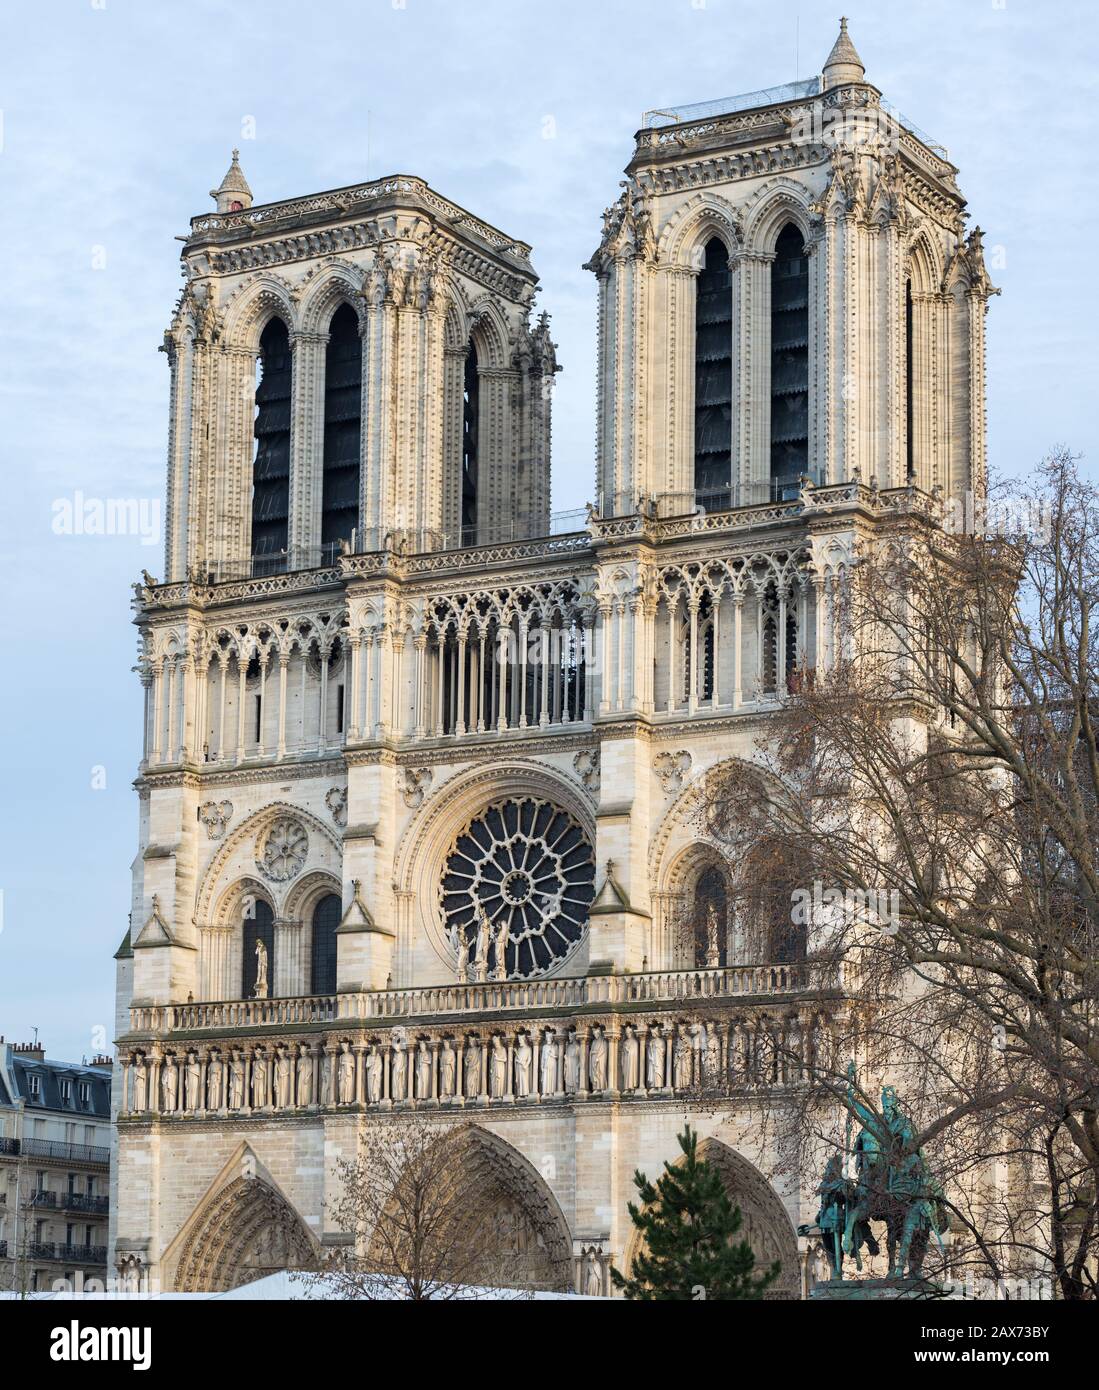 Foto retrato de alta resolución de las dos torres de Notre Dame. En el centro uno de los llamados ventanales de rosas. Catedral católica, gótica. Foto de stock